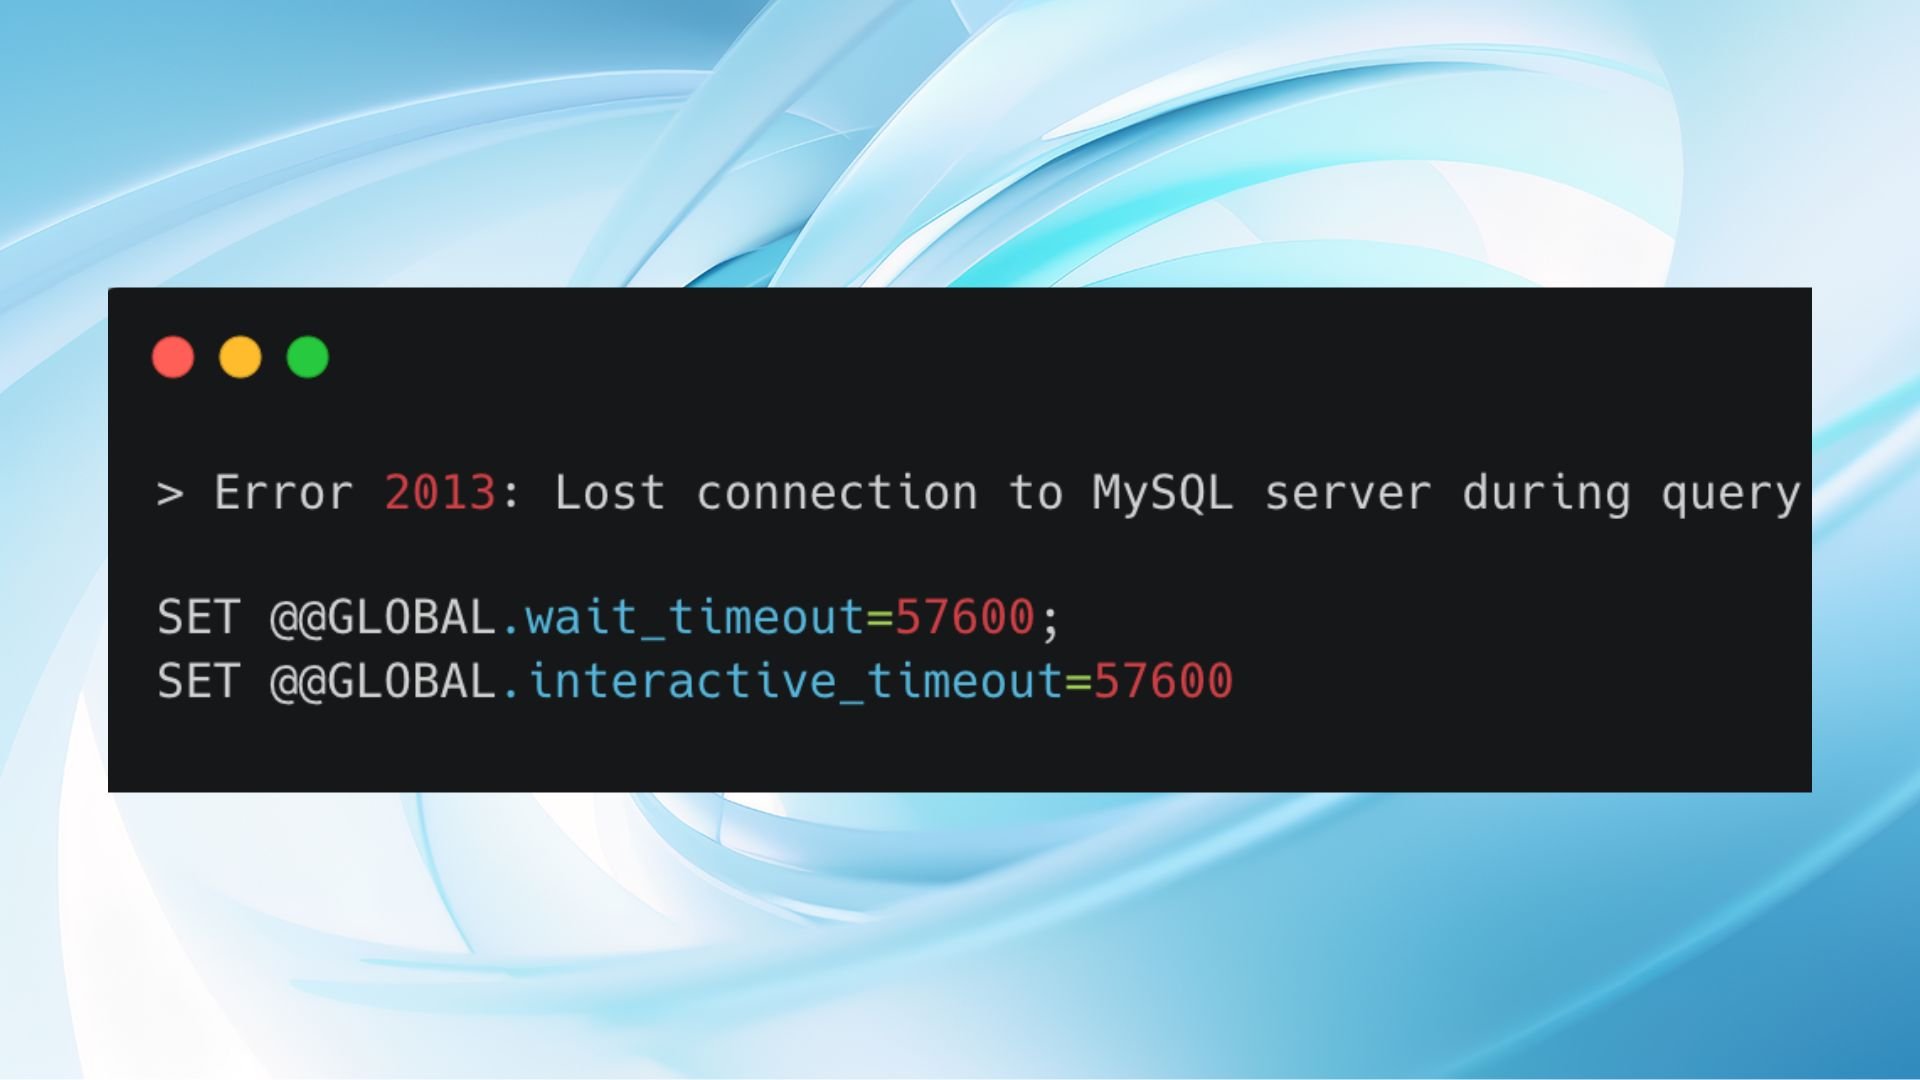 クエリ中に MySQL サーバーへの接続が失われました。